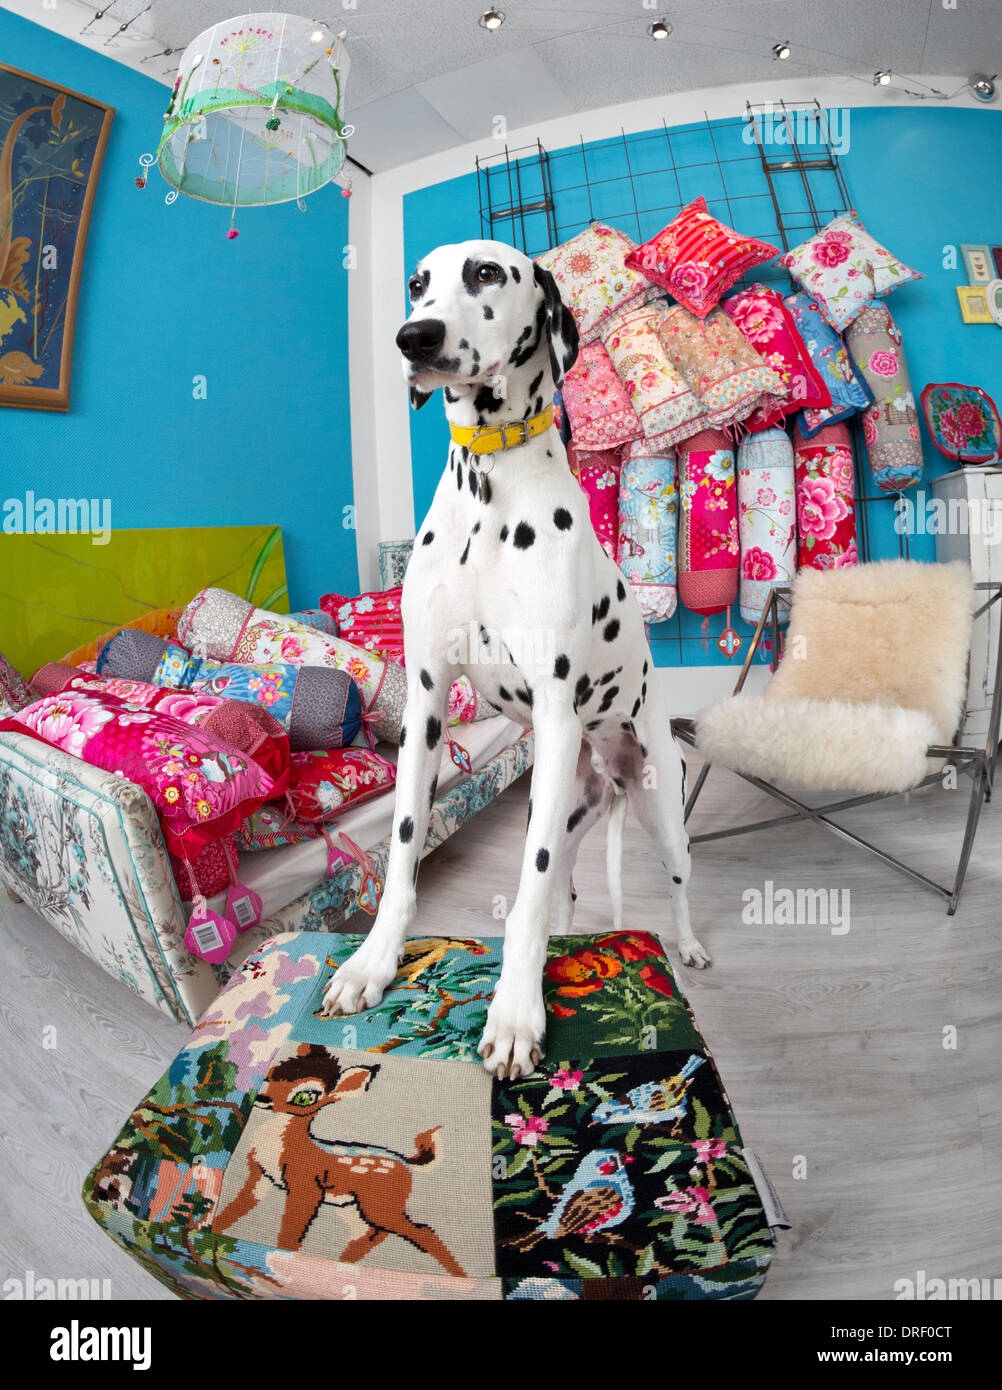 Ein Dalmatiner (Canis Lupus Familiaris) in einem Deko-Shop.  Chien Dalmatien Dans un Magasin de Dekoration. Stockfoto